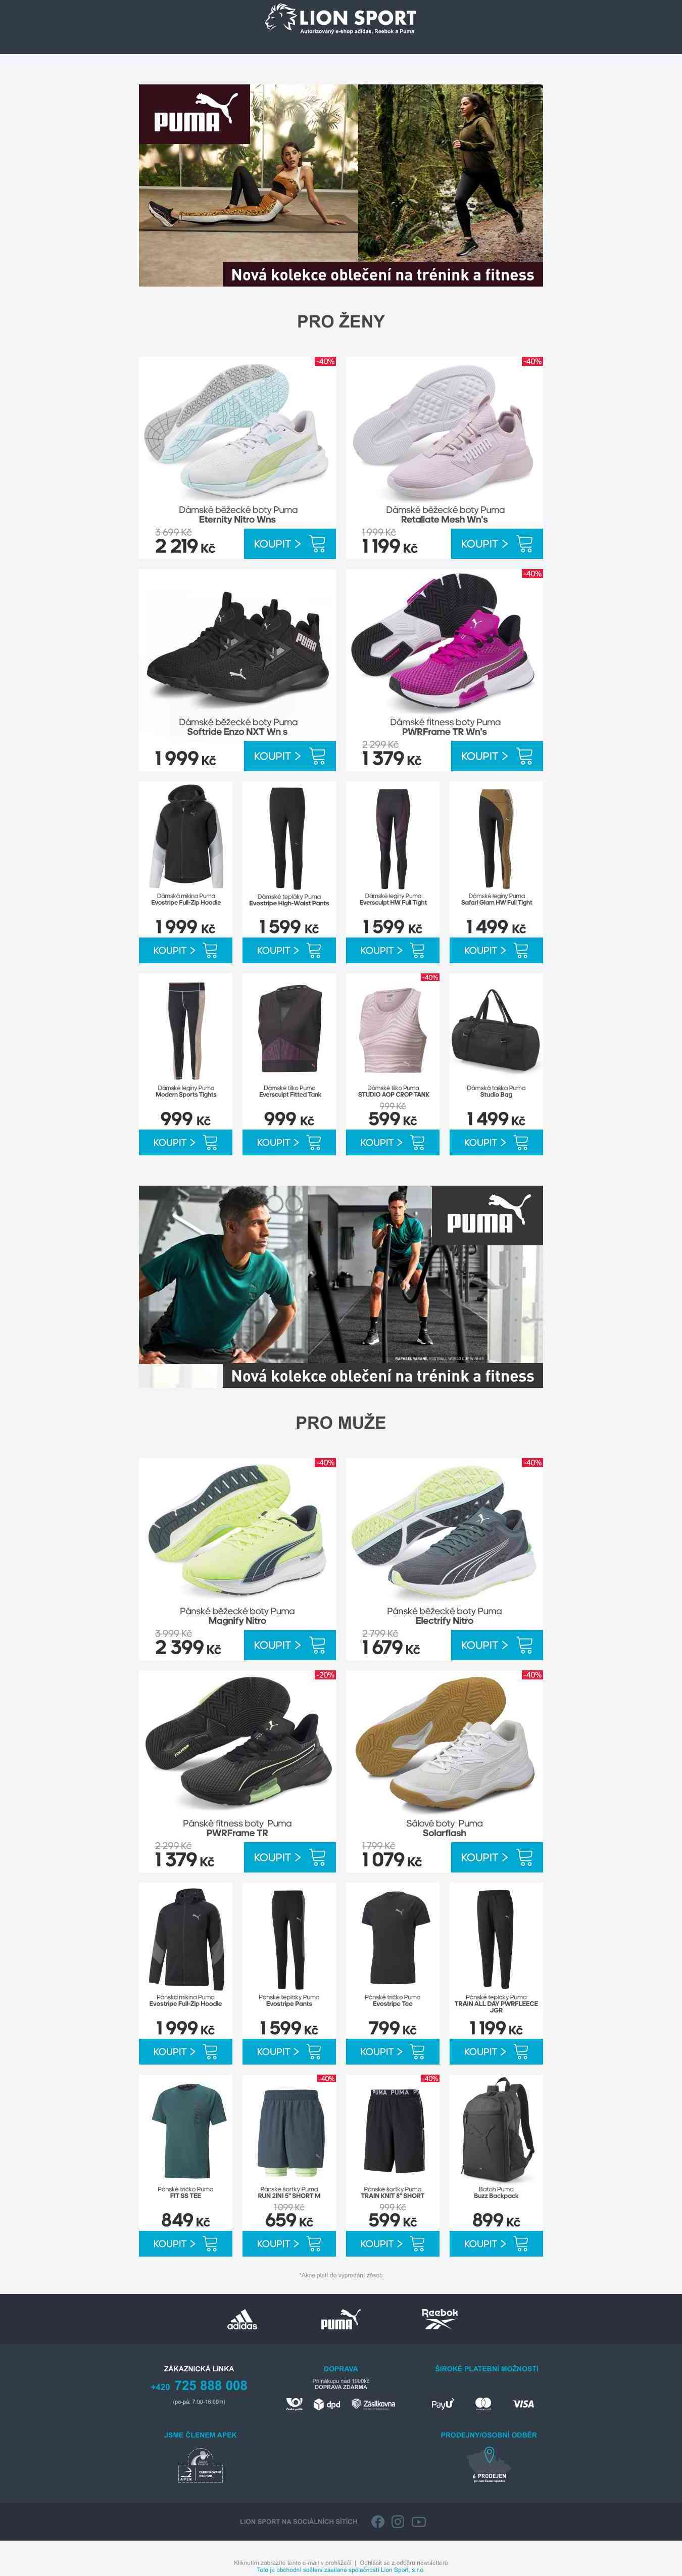 PUMA - nová kolekce oblečení na trénink a fitness